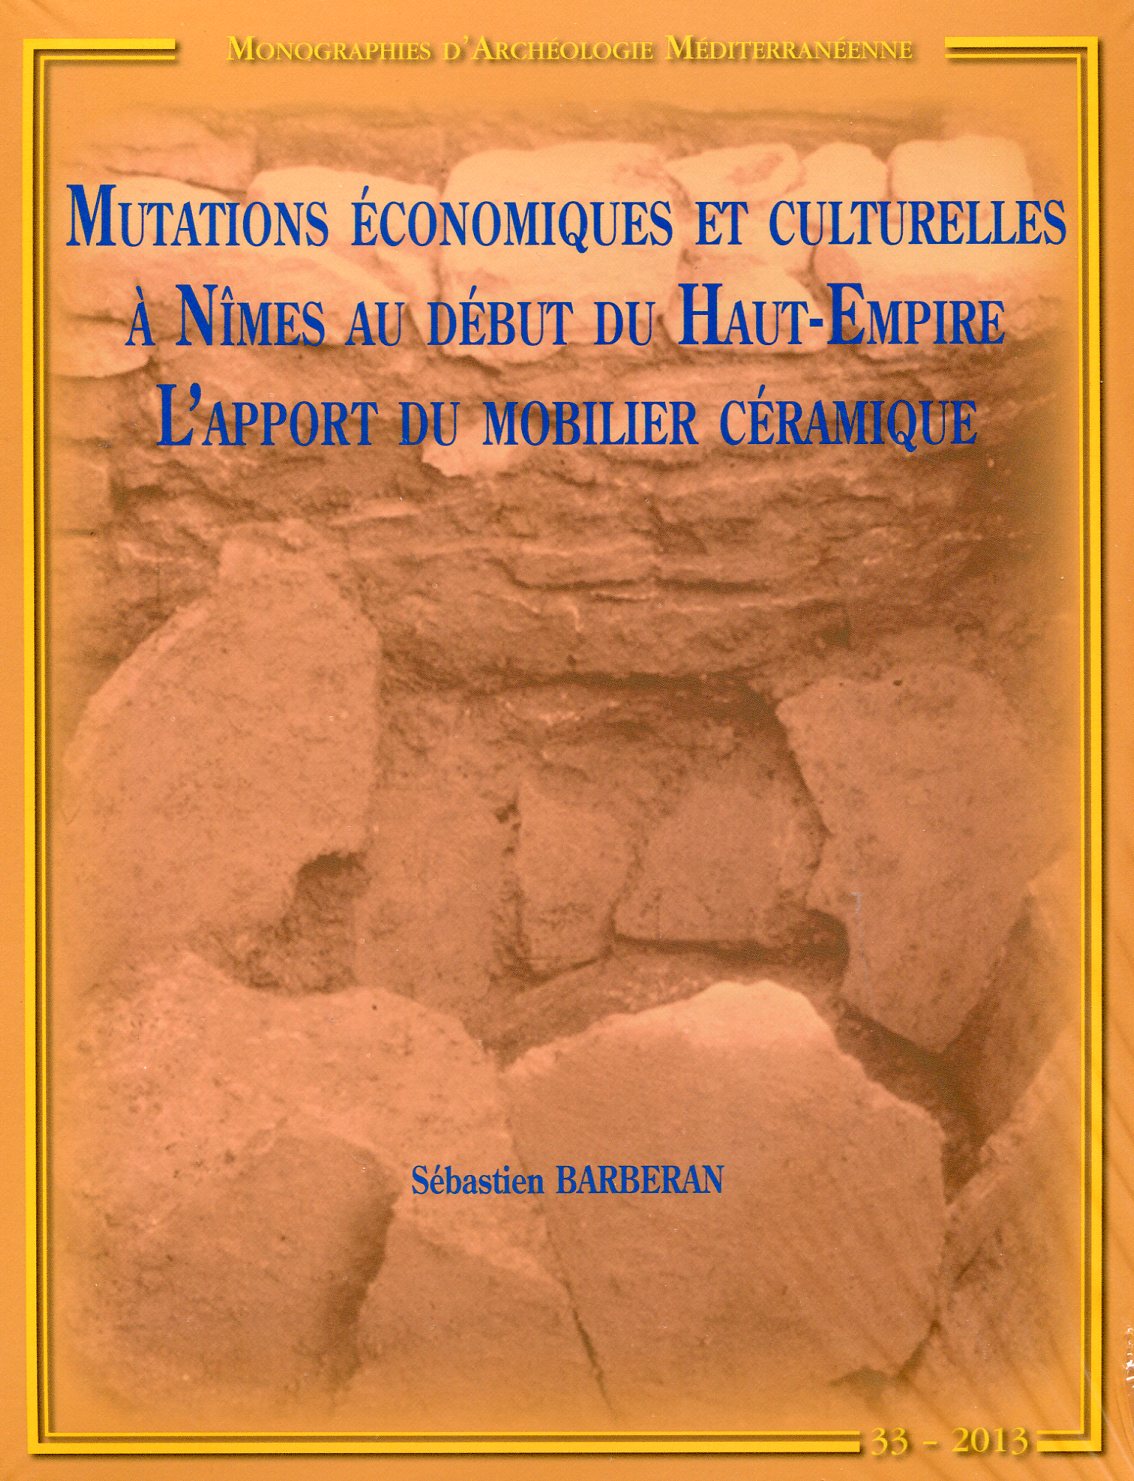 Mutations économiques et culturelles à Nîmes au début du Haut-Empire. L'apport du mobilier céramique, (MAM 33), 2013.